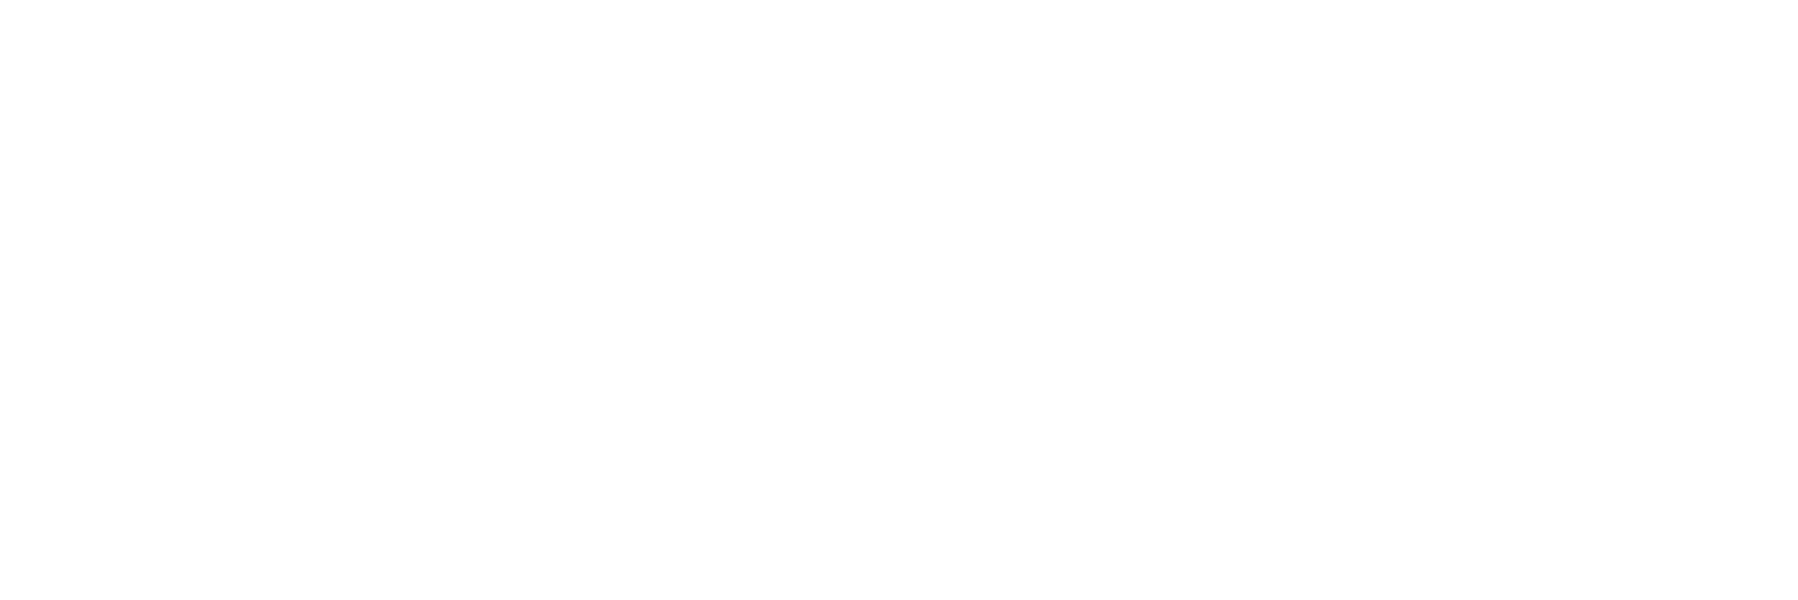 Colorado Gives 365